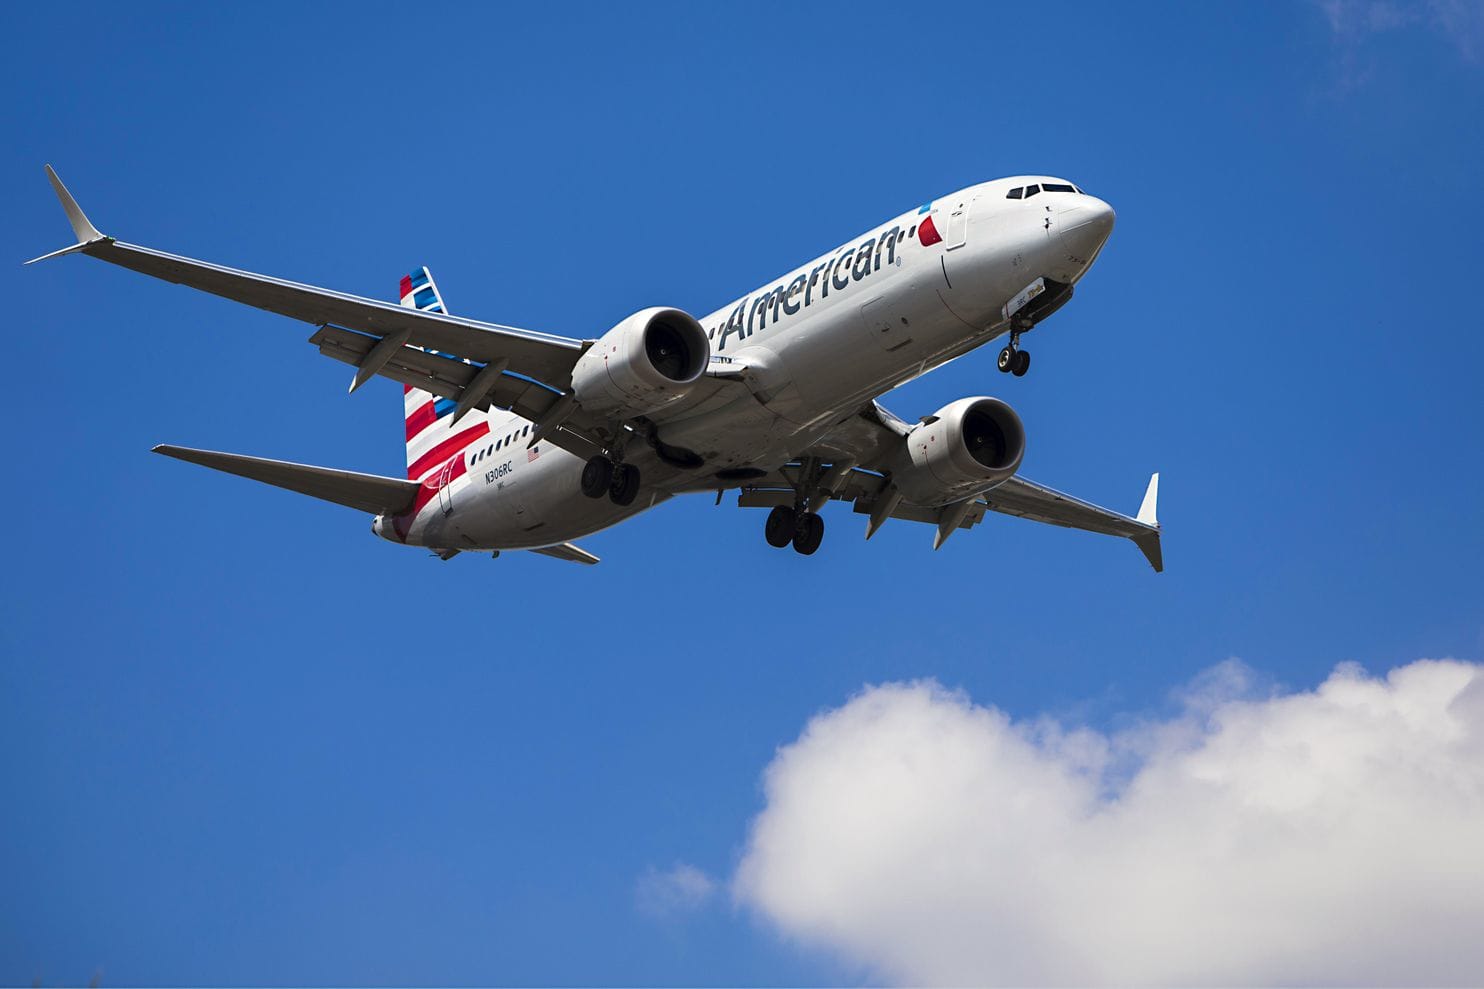 Μετά από δύο αεροπορικές τραγωδίες η Boeing προχωρά σε επανασχεδίαση του λογισμικού πτήσης του 737 MAX-8